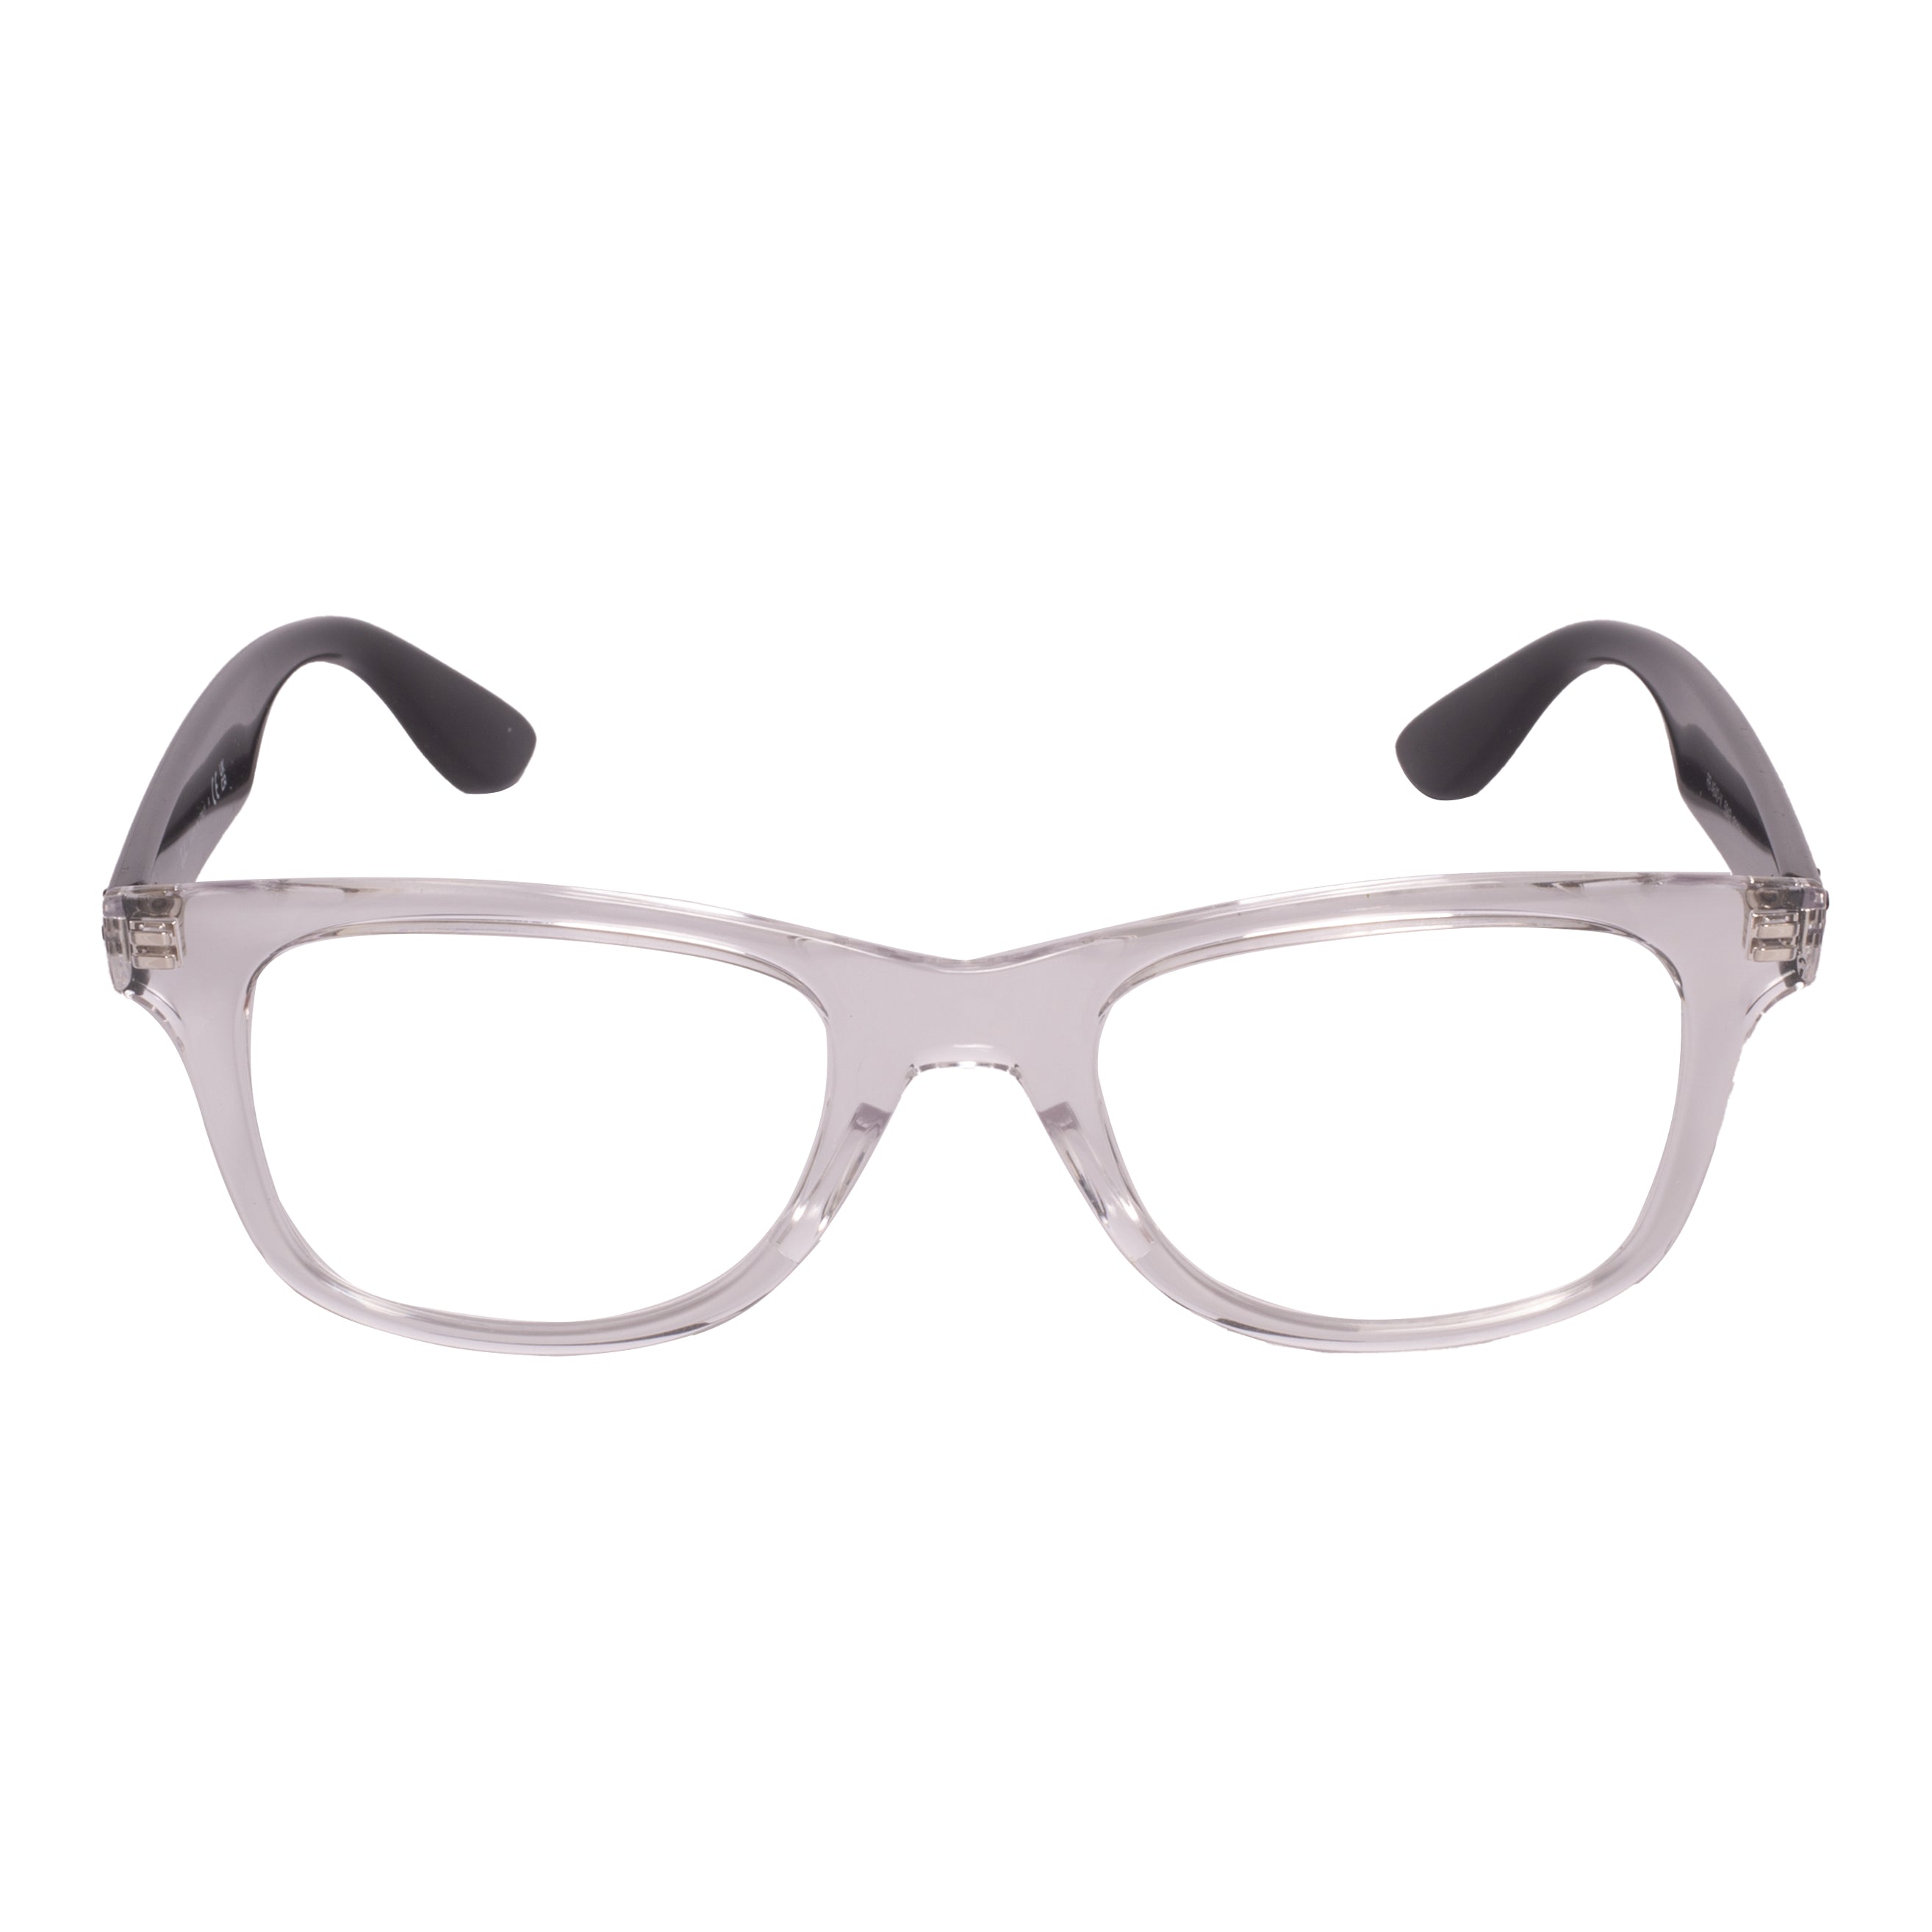 Rayban-RX4640V-50-5943 Eyeglasses - Premium Eyeglasses from Rayban - Just Rs. 7990! Shop now at Laxmi Opticians